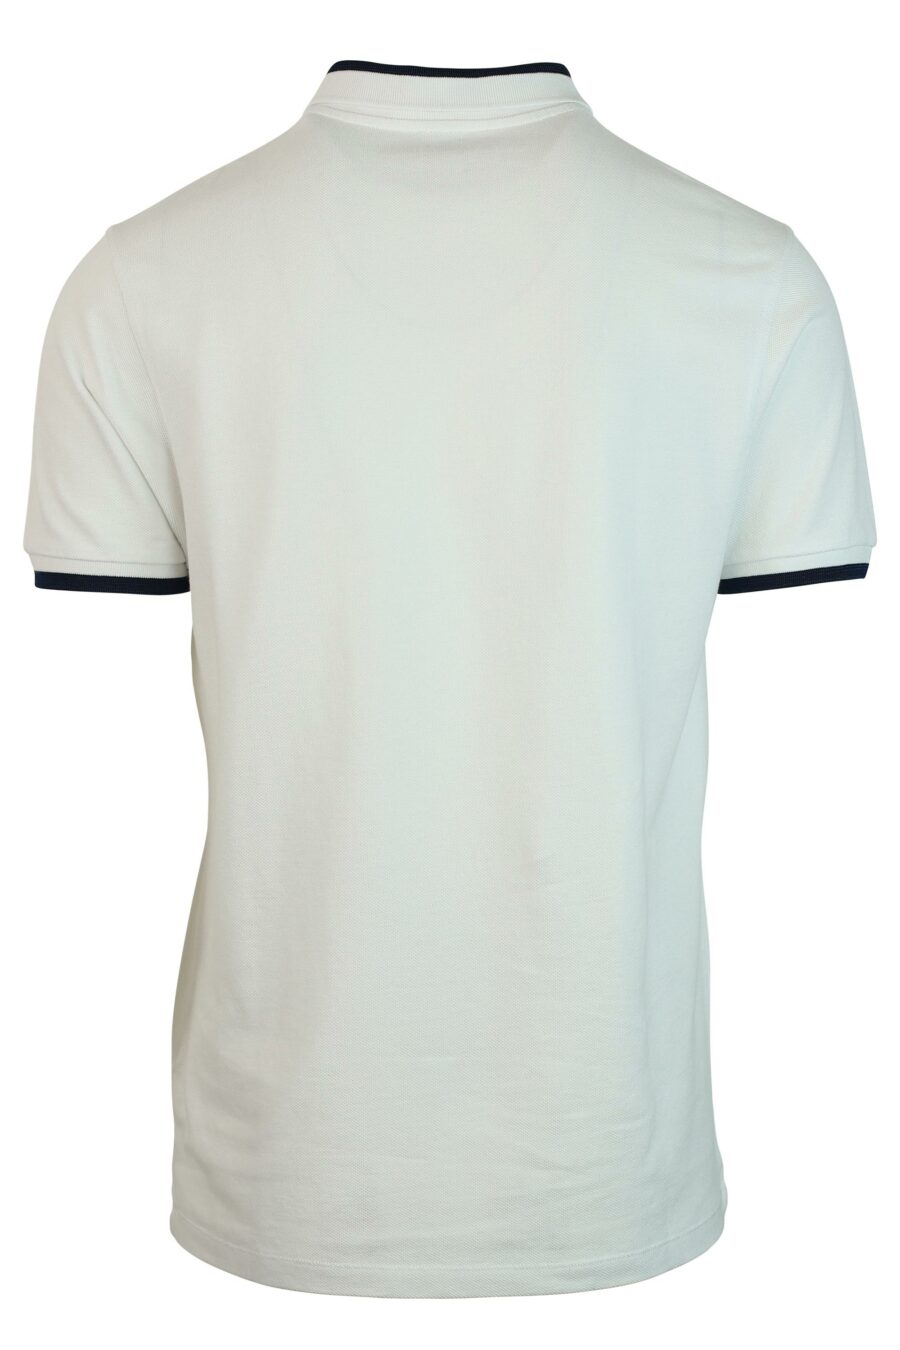 White "slim" polo shirt with mini-logo - 3612230468931 2